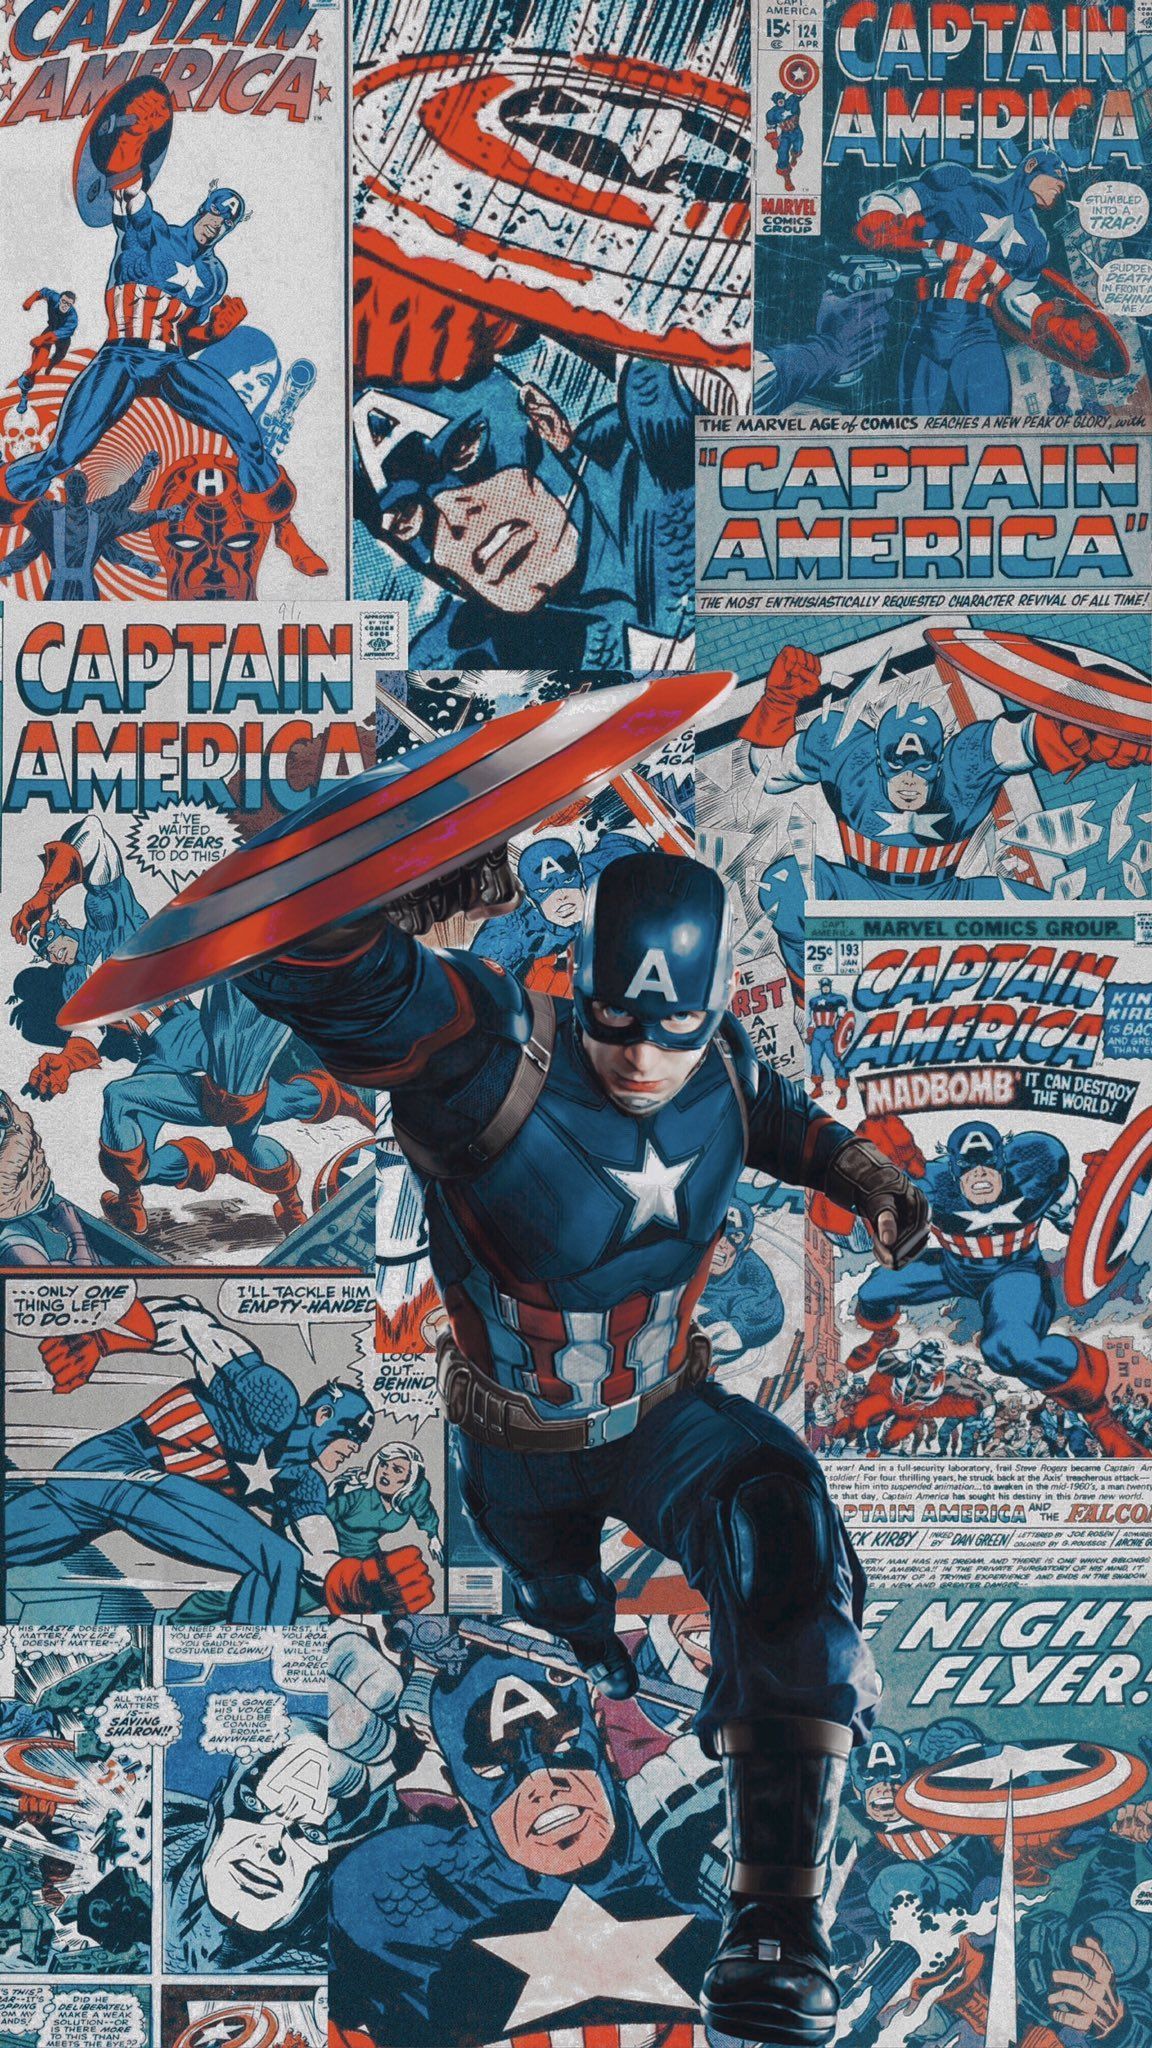 Wallpaper & Headers on Twitter. Captain america comic, Captain america wallpaper, Marvel captain america